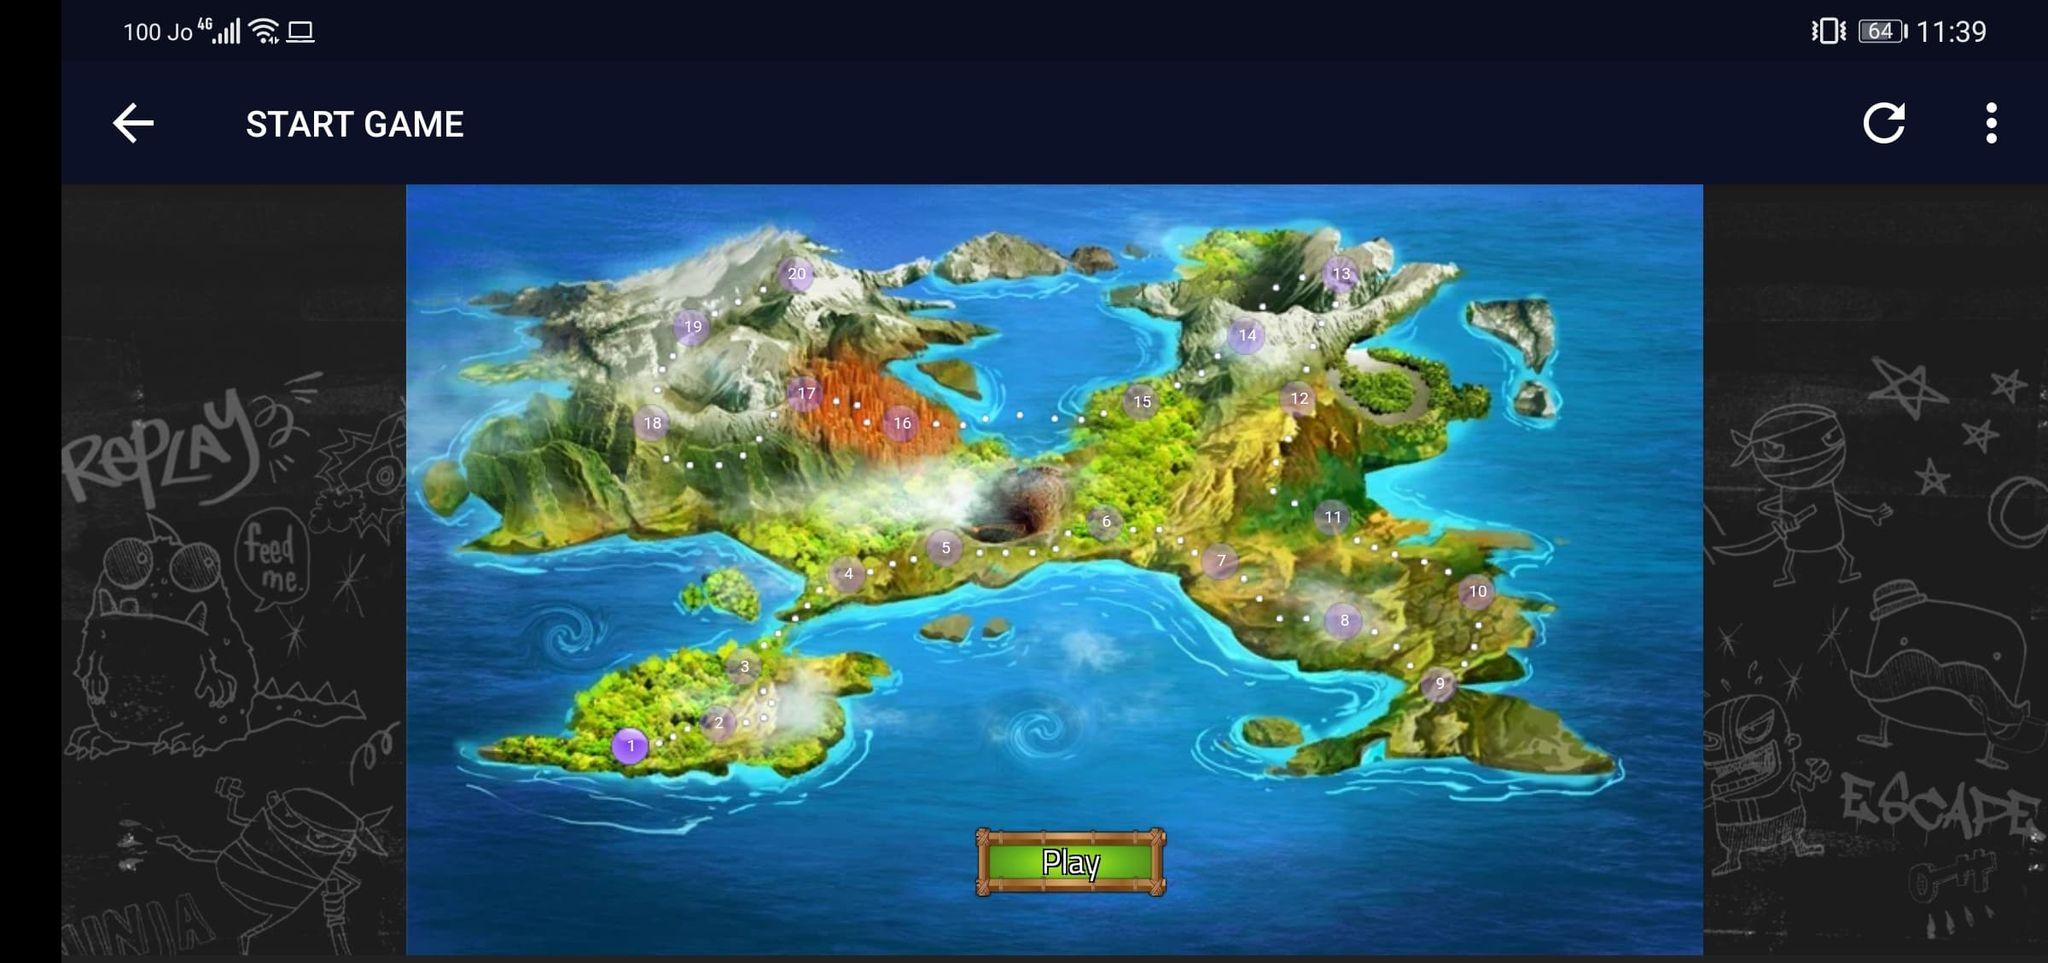 Игра City Island 3 как выглядит на острове болотистые утесы. Остров на 3 х